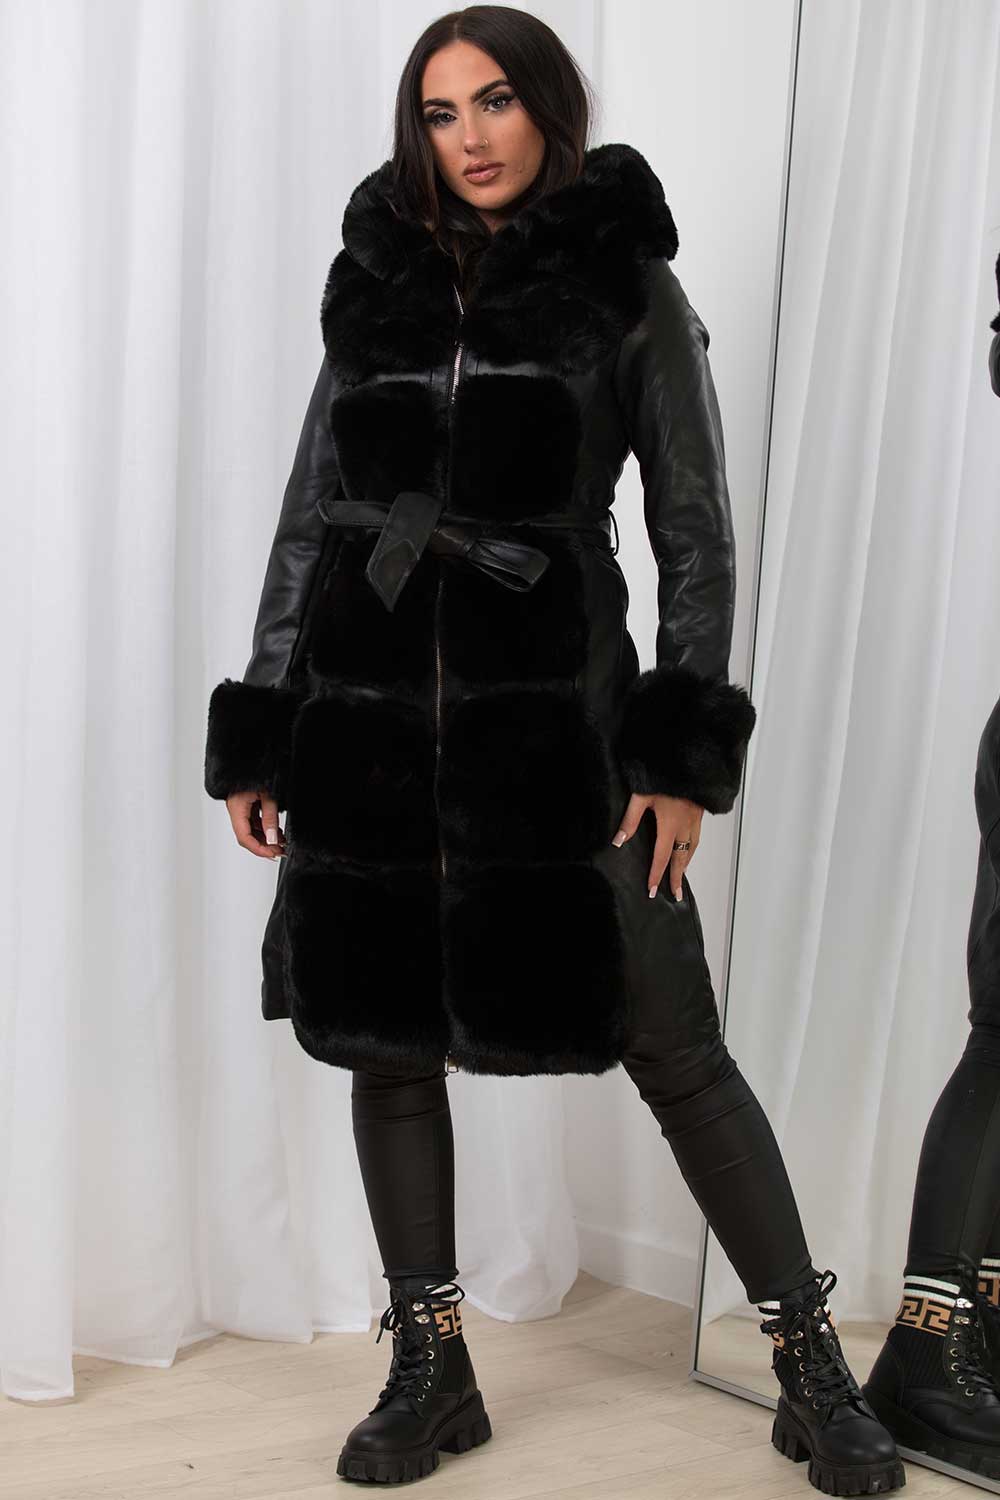 ジャケット/アウターJakke longline faux fur coat  with belt